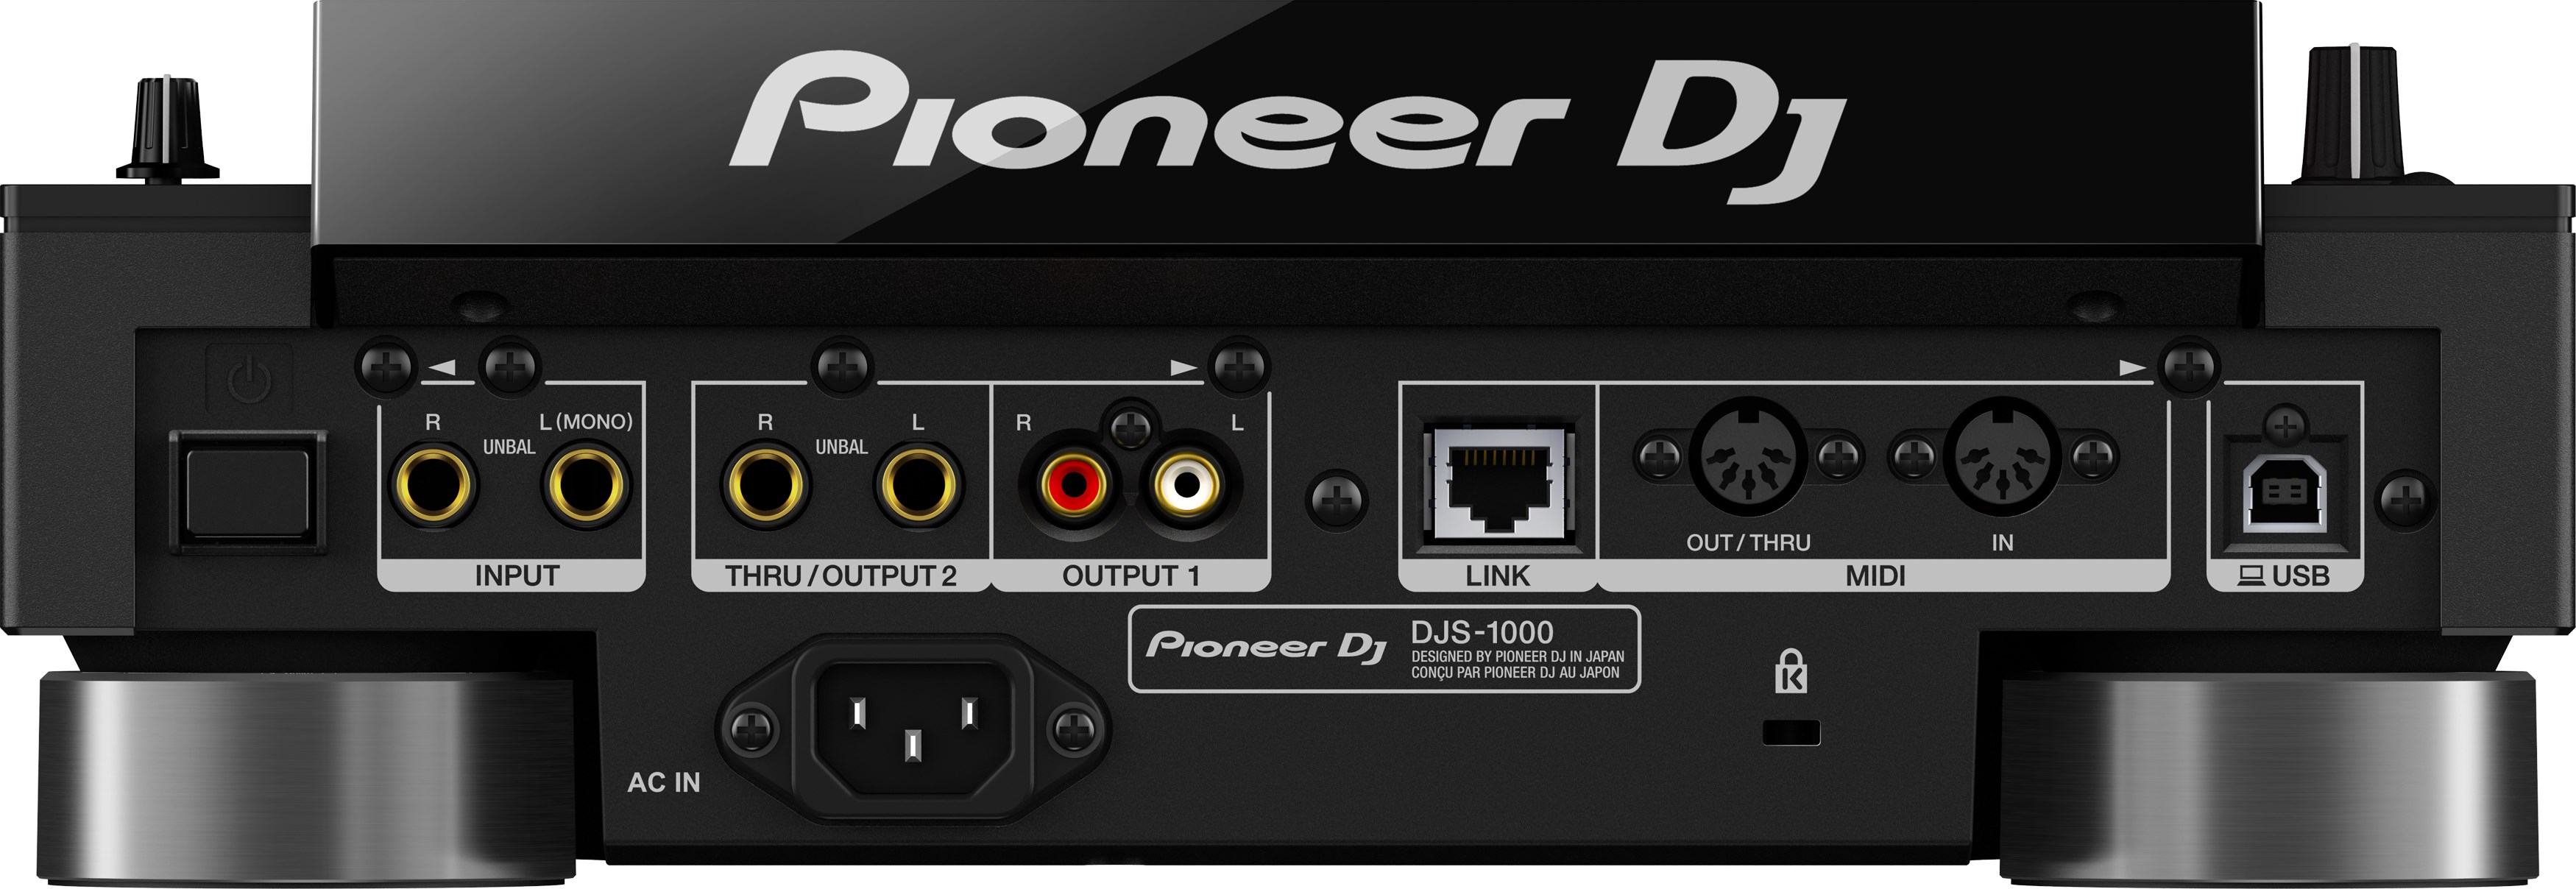 Pioneer Dj Djs-1000 - Sampler - Variation 1